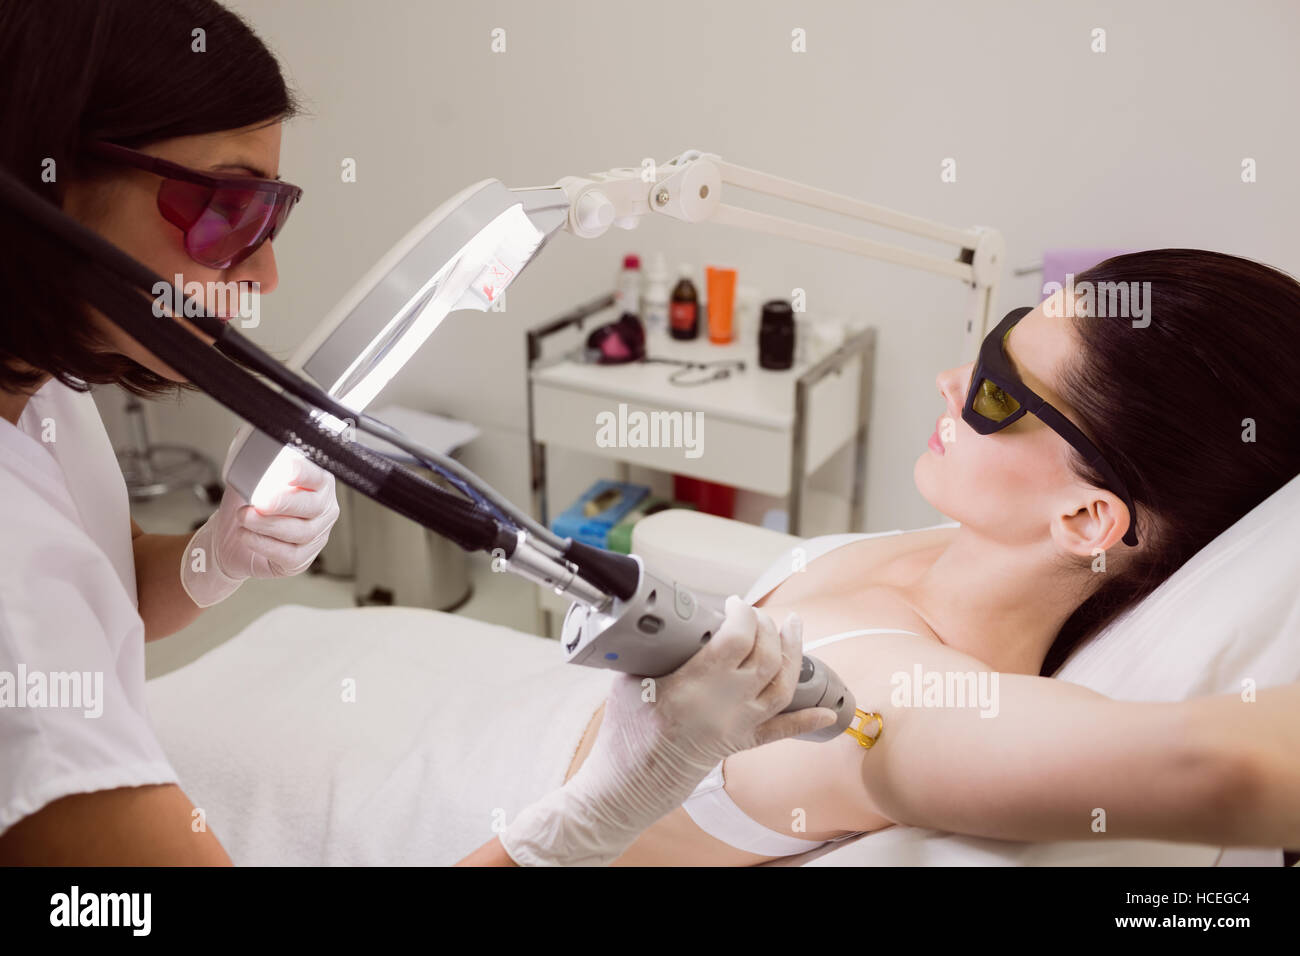 Paciente recibiendo tratamiento para eliminar el vello mediante láser Foto de stock